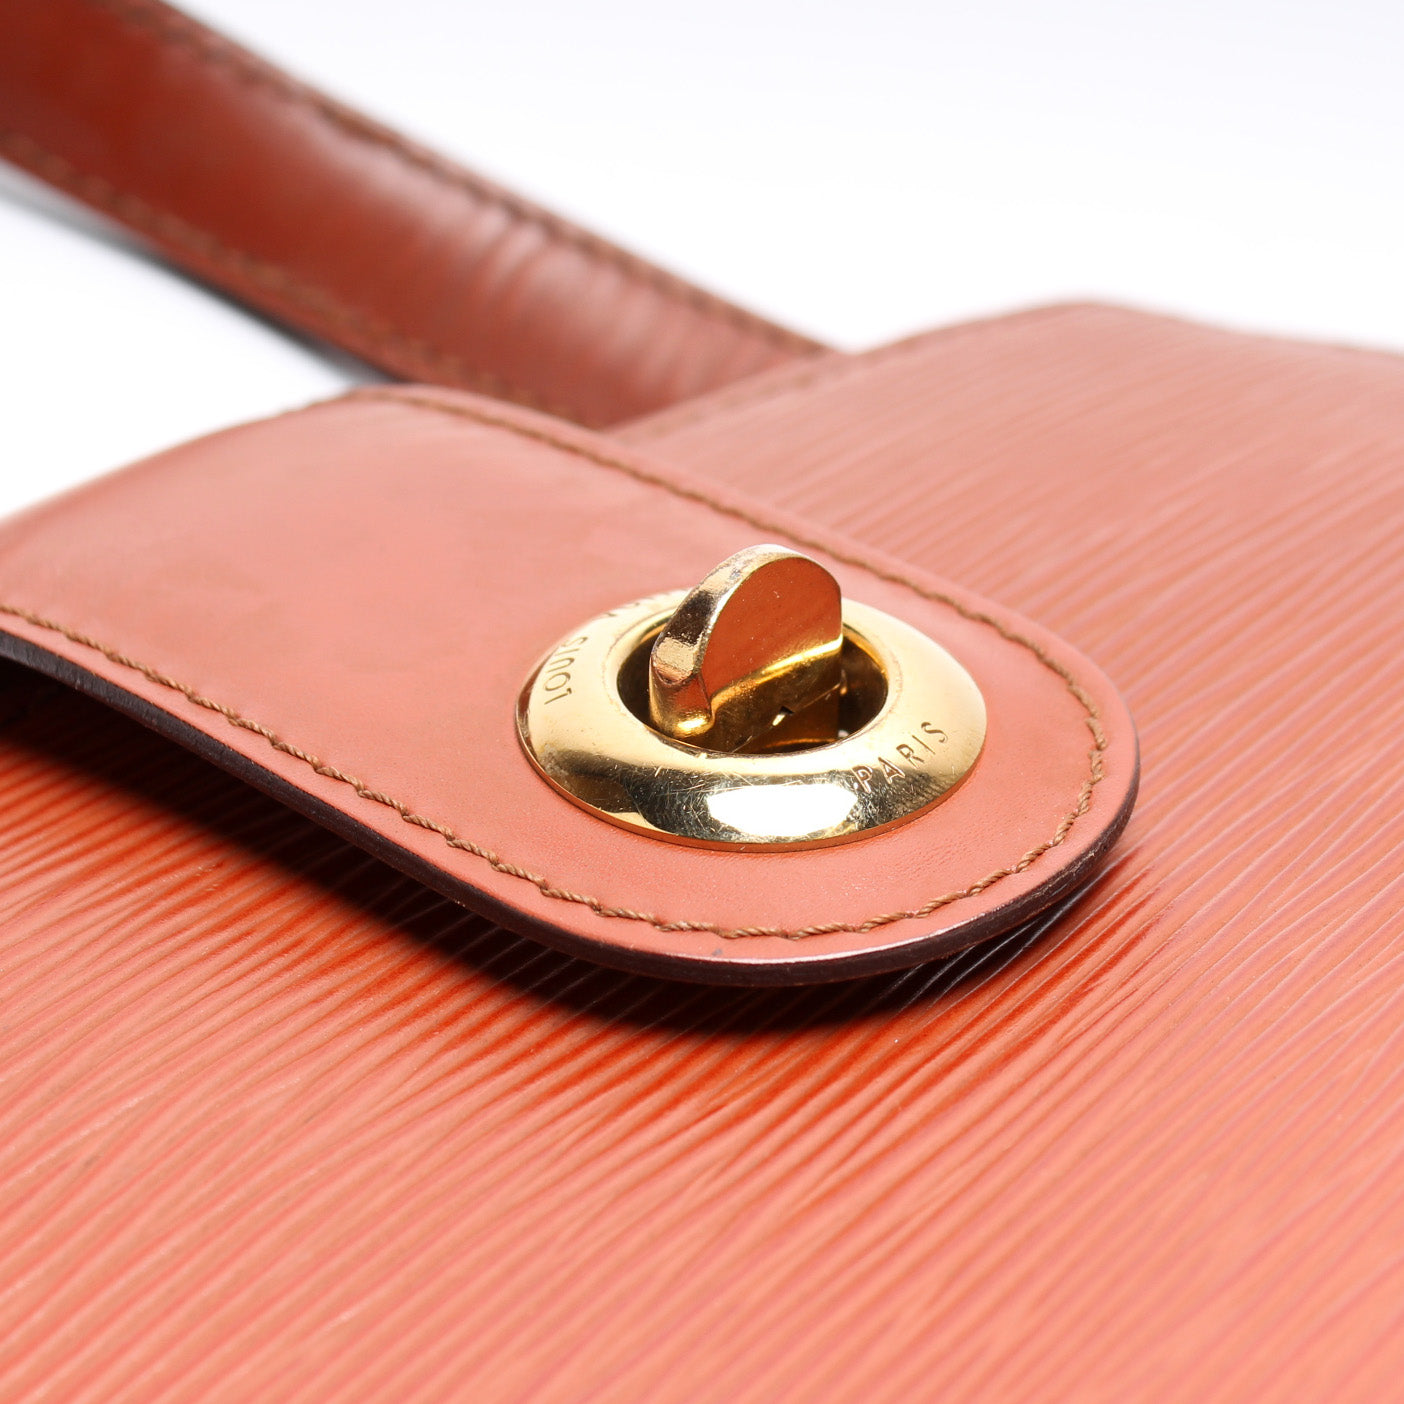 Cluny Shoulder Vintage Epi – Keeks Designer Handbags